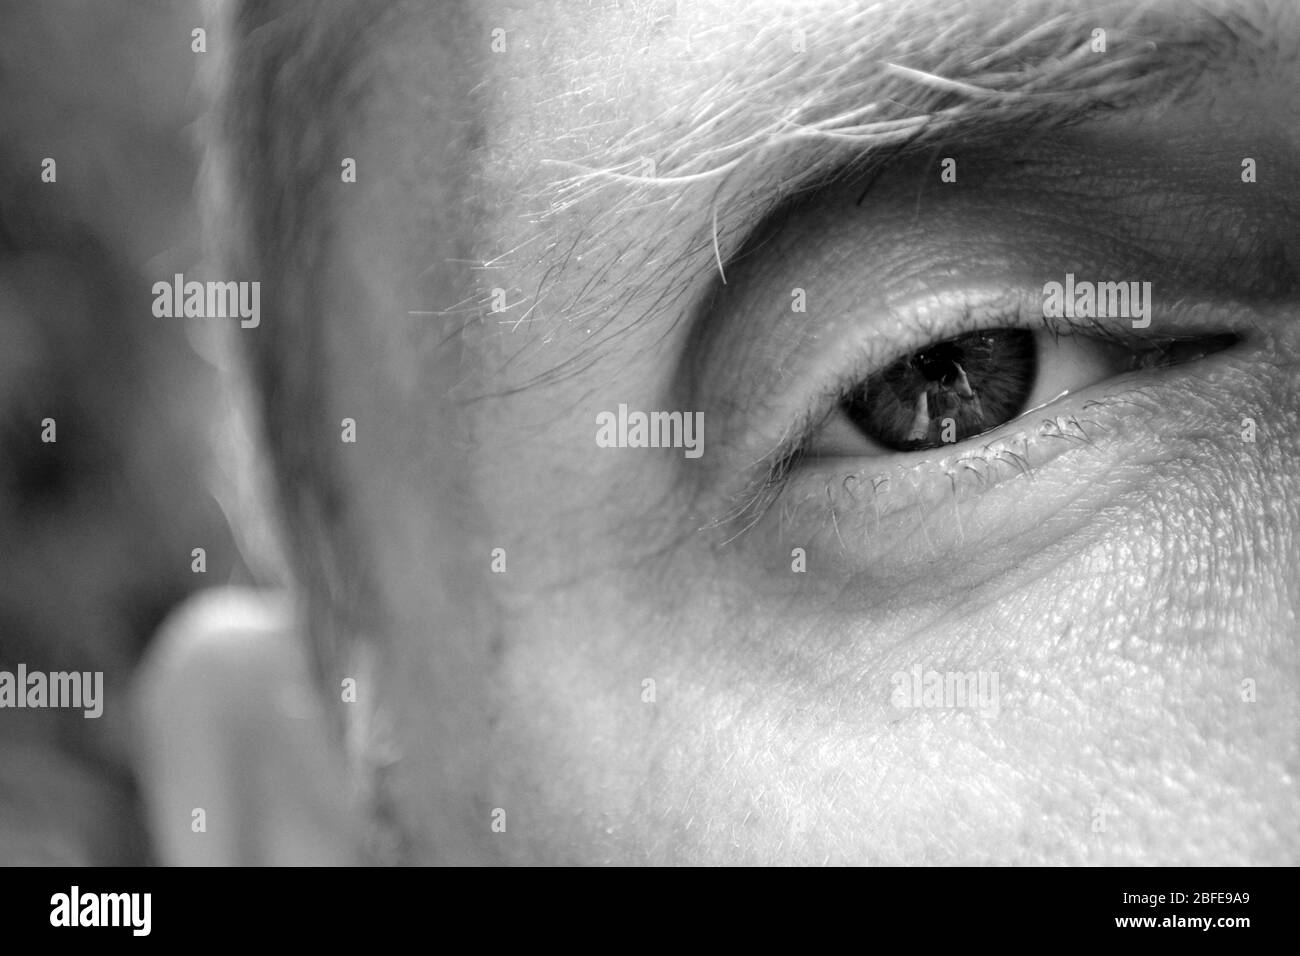 Nahaufnahme von Auge und Gesicht des Menschen - Schwarz-Weiß-Fotografie Stockfoto